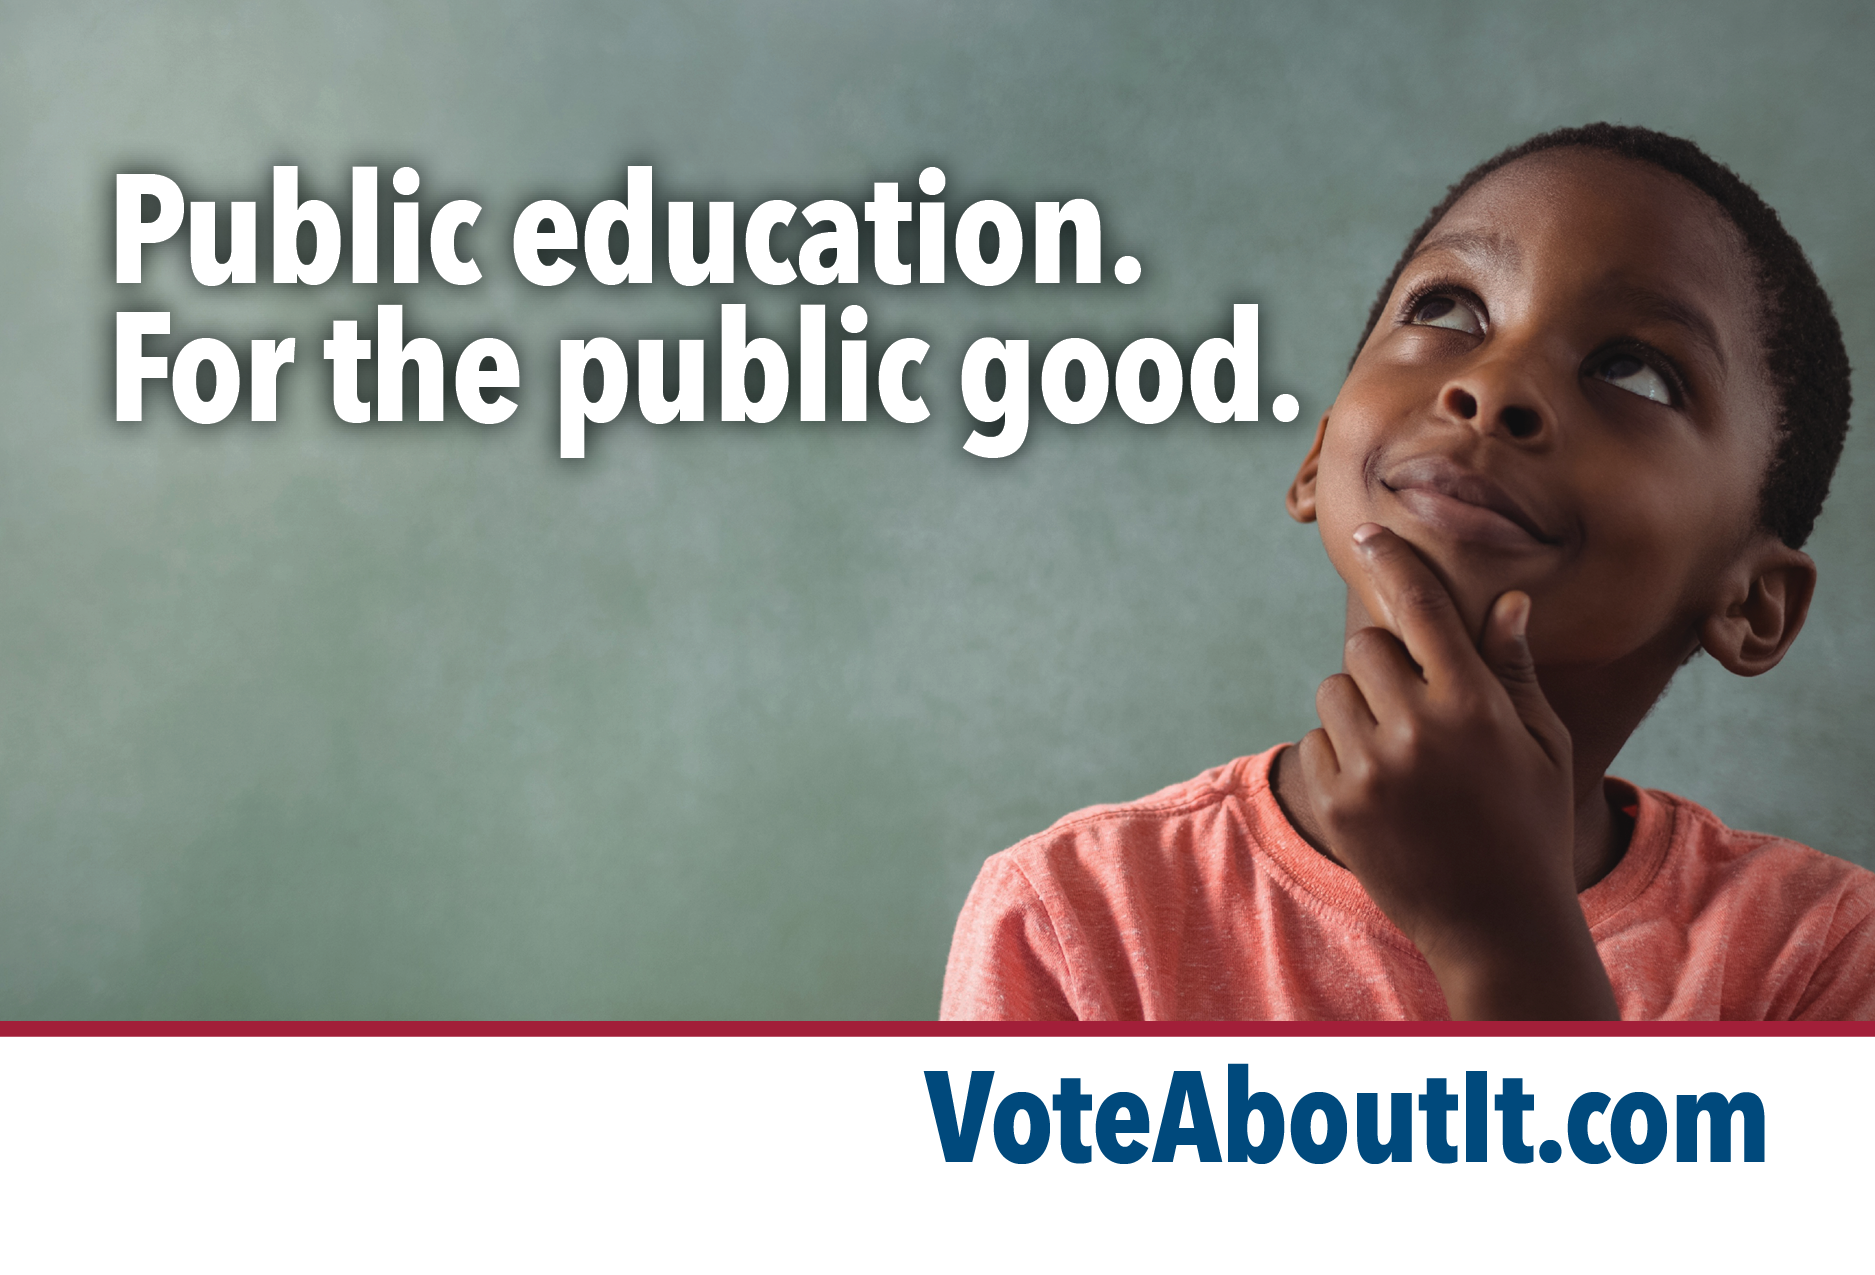 Public education. For the public good.